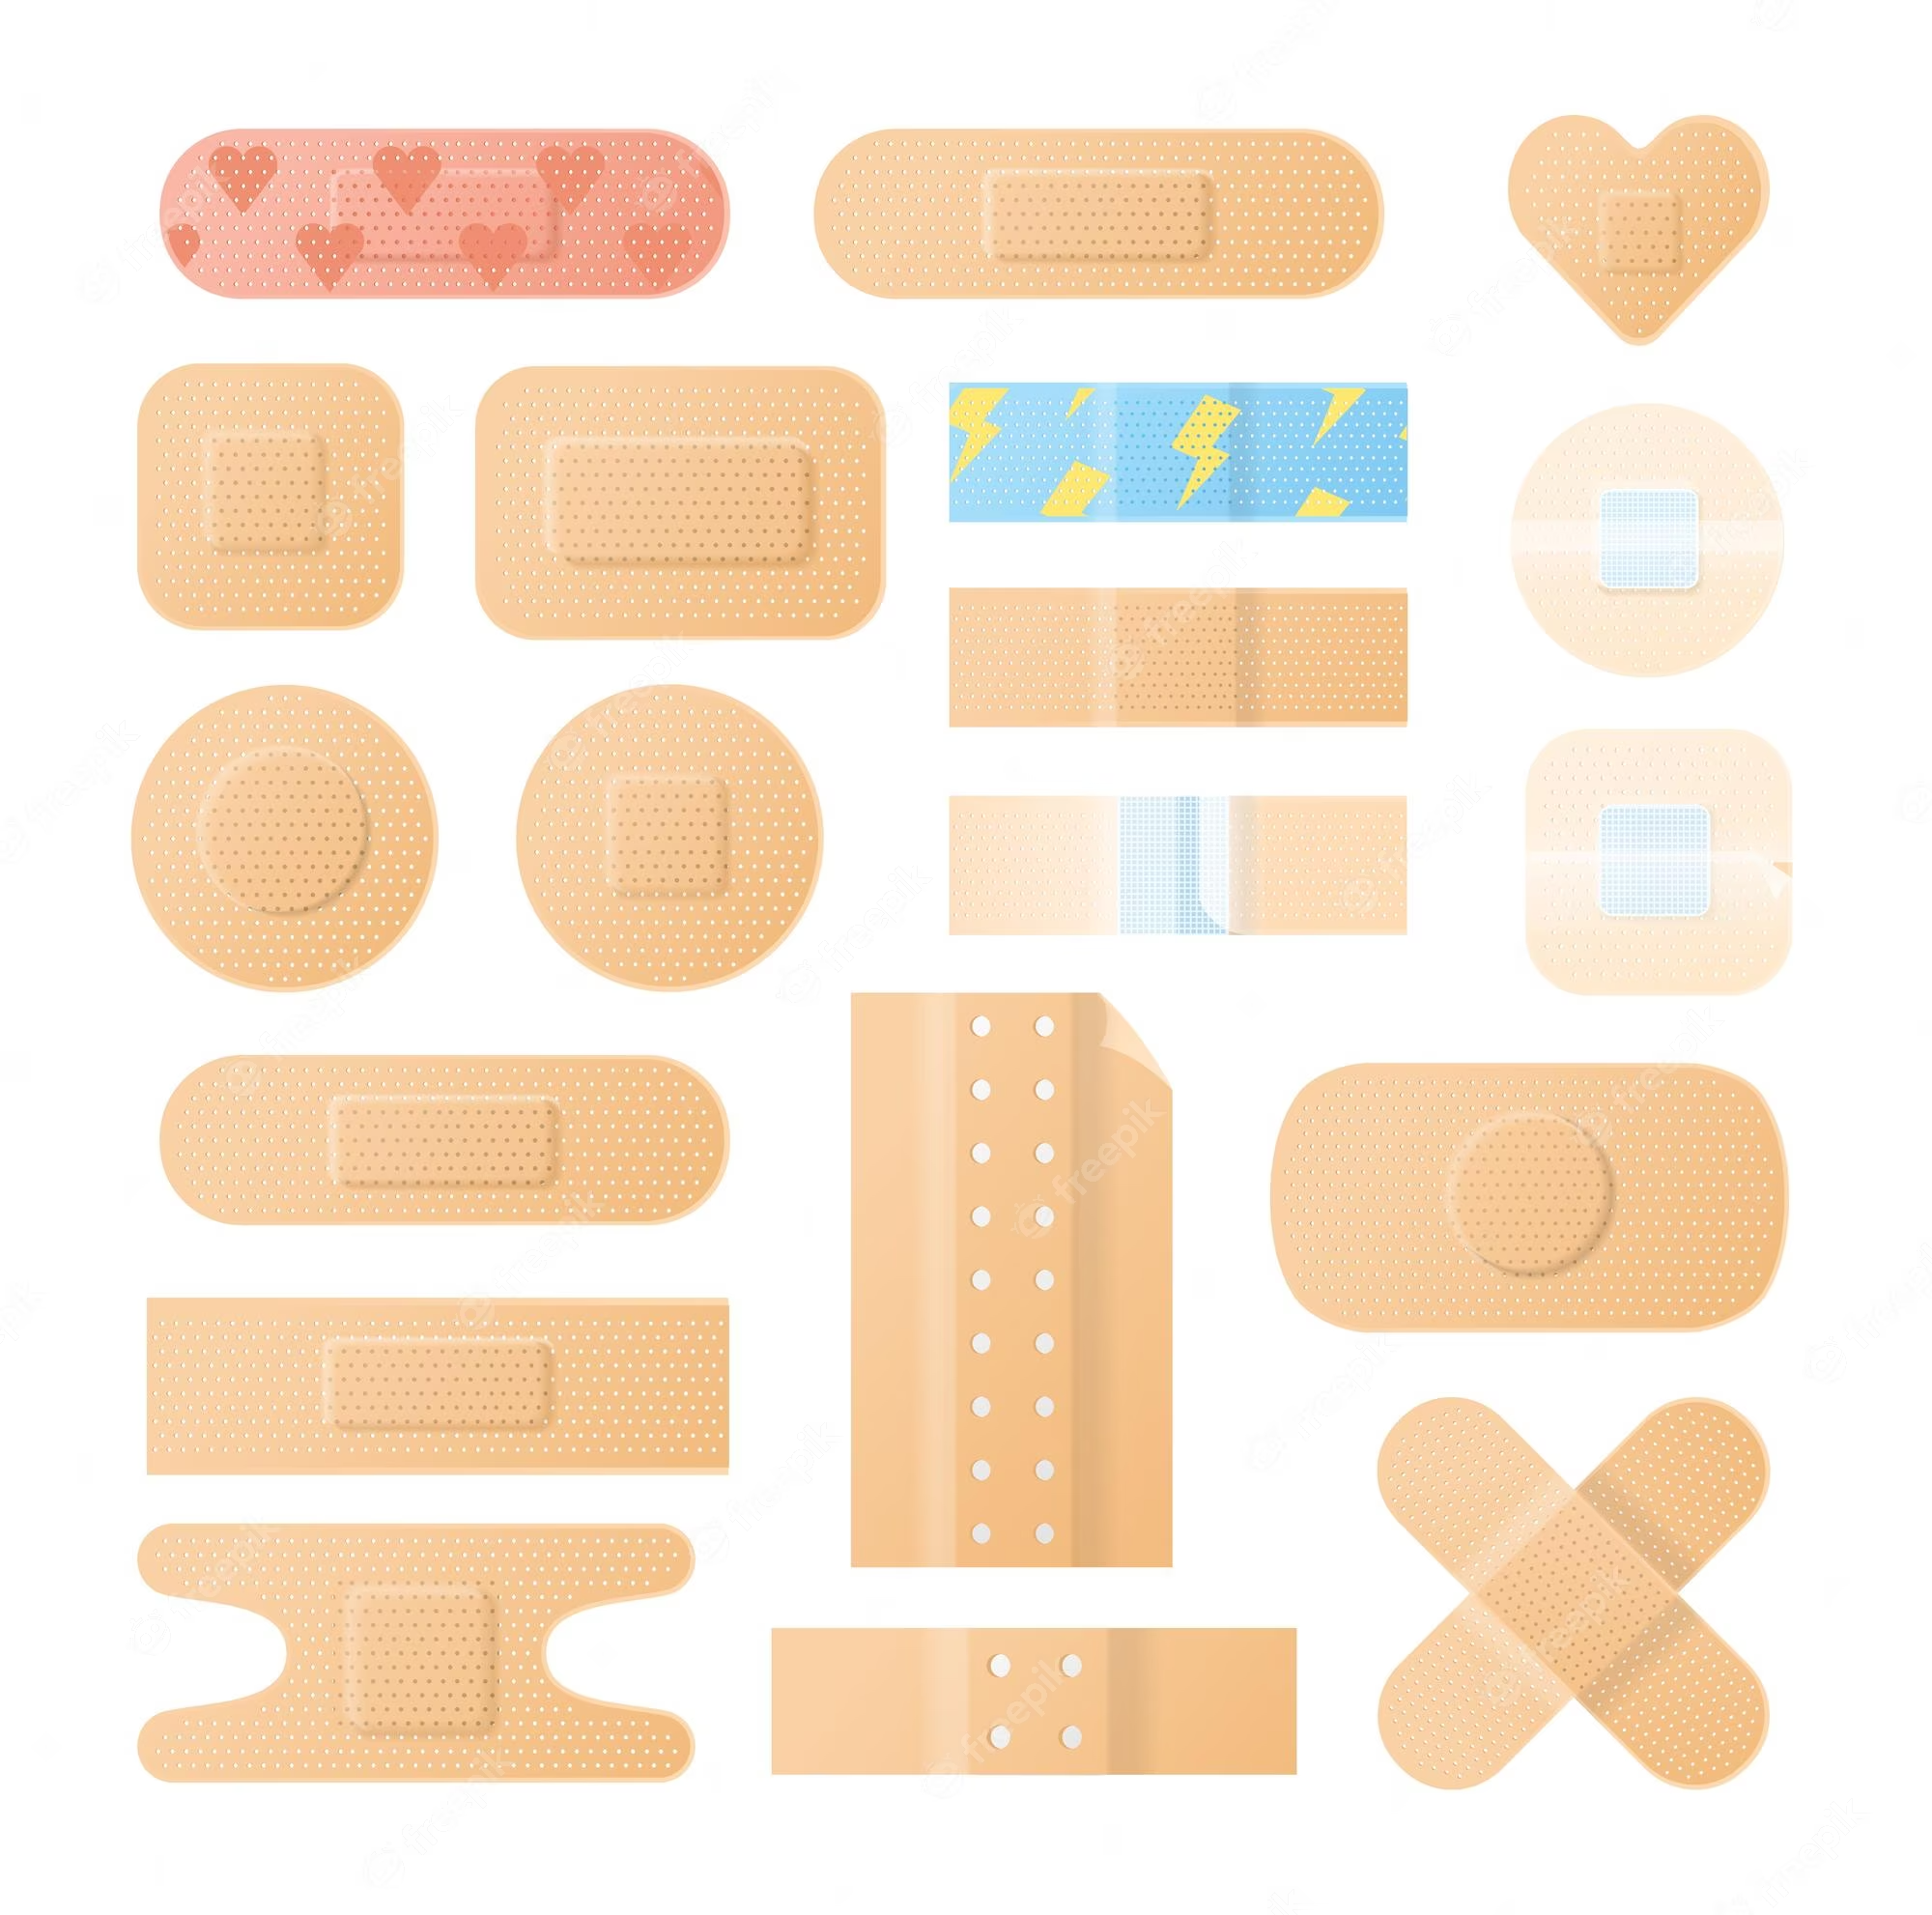 Bandages (various sizes)